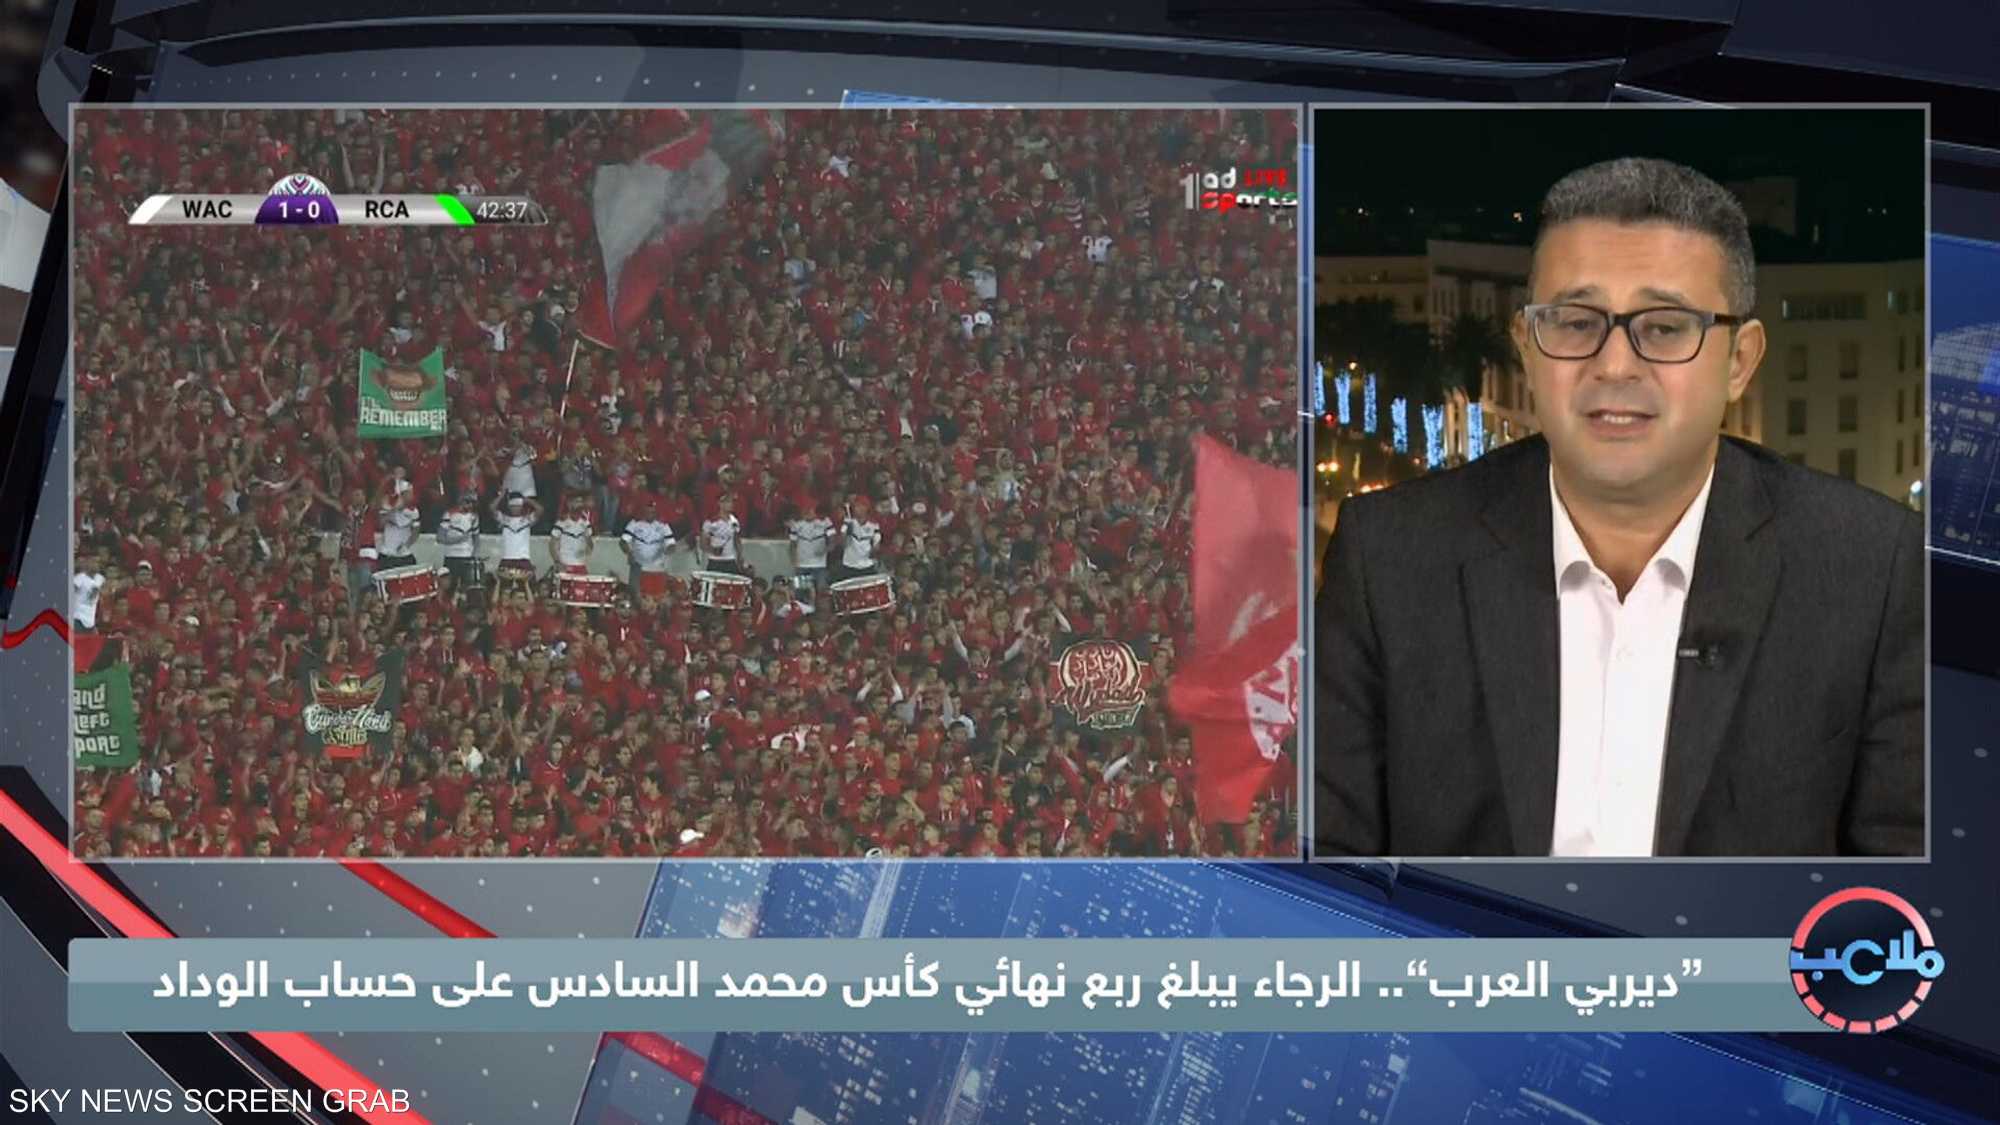 الرجاء يبلغ ربع نهائي كأس محمد السادس على حساب الوداد.